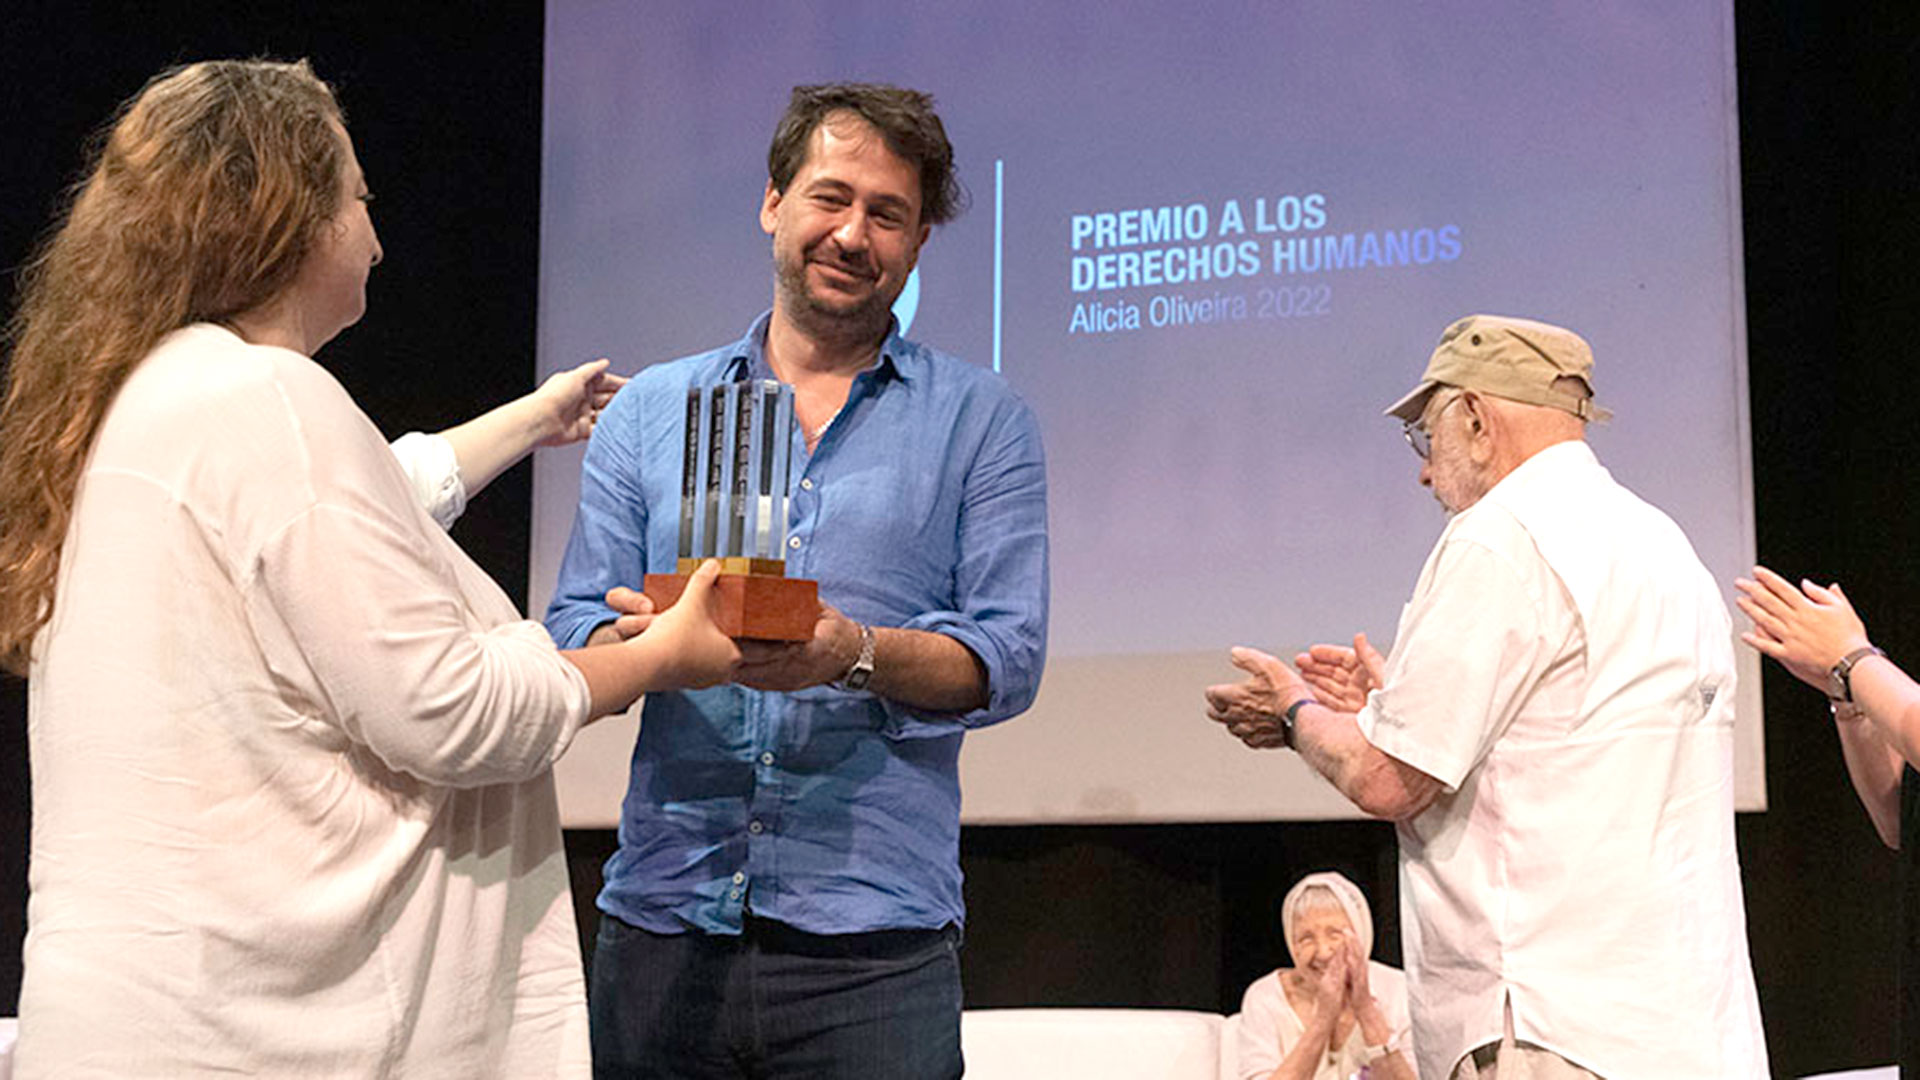 La Defensoría del Pueblo porteña María Rosa Muiños entrega el premio al director de cine Santiago Mitre